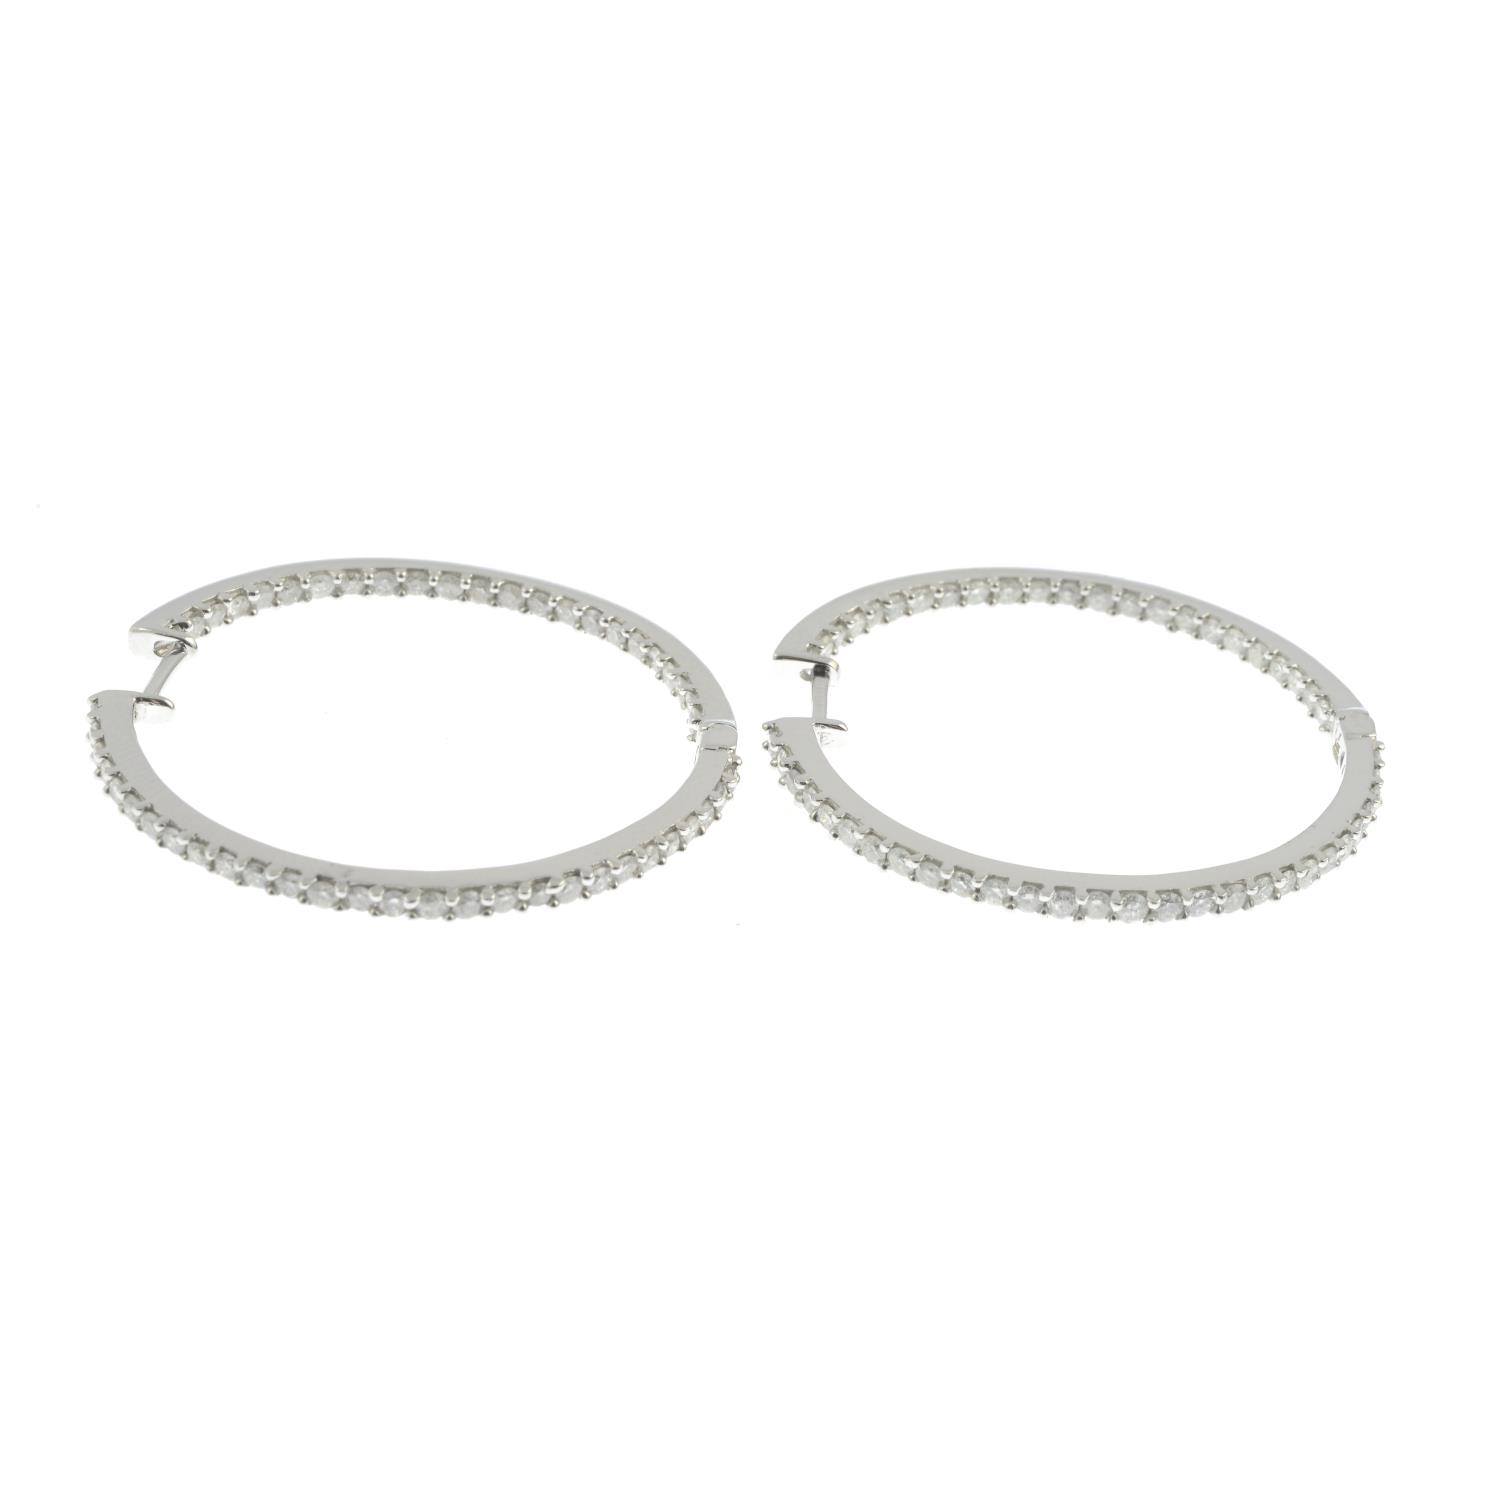 A pair of diamond hoop earrings. - Image 3 of 3